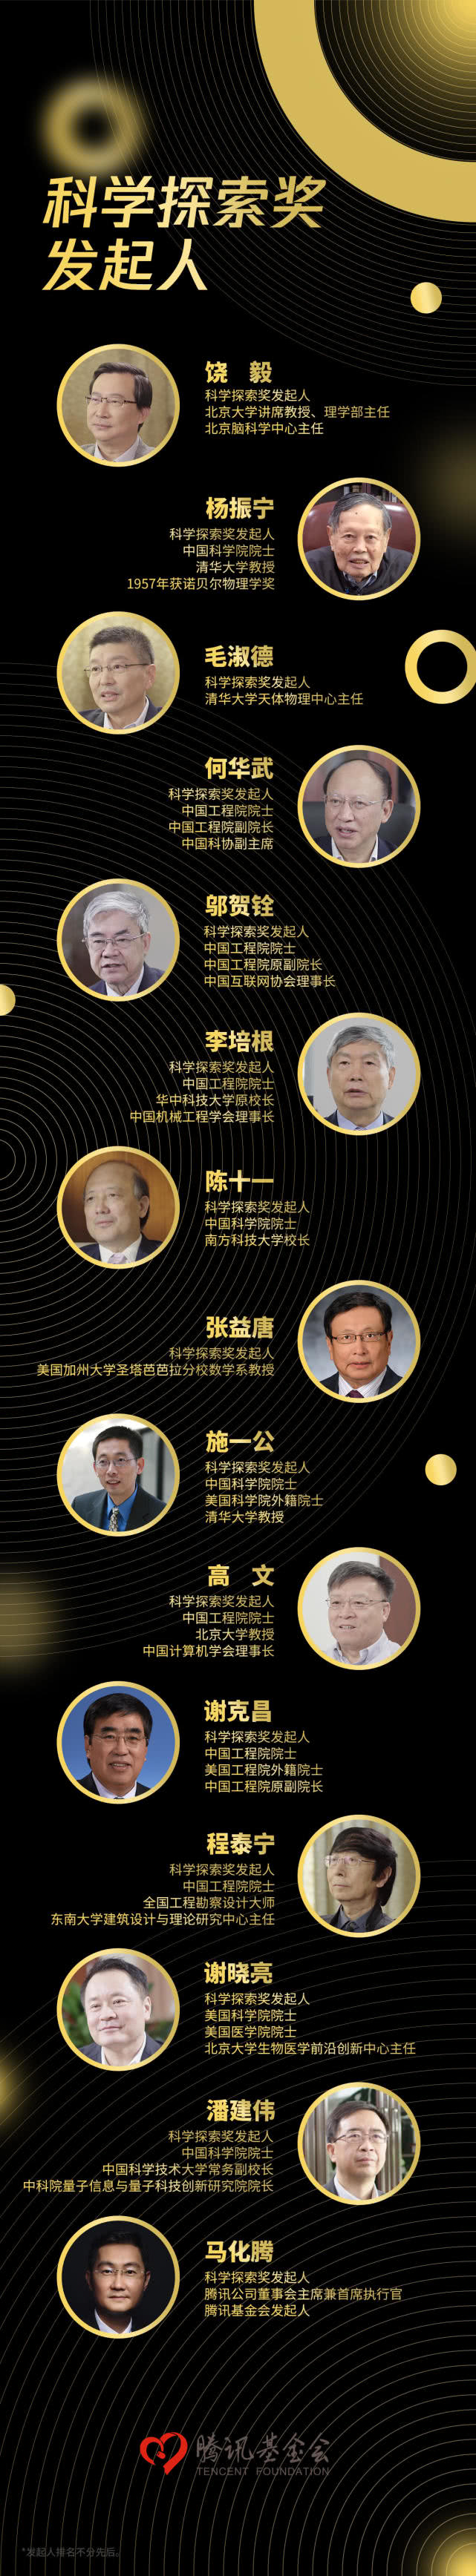 国外芯片技术交流-【视频】科学探索奖：马化腾与10余位科学家共同发起设立risc-v单片机中文社区(1)